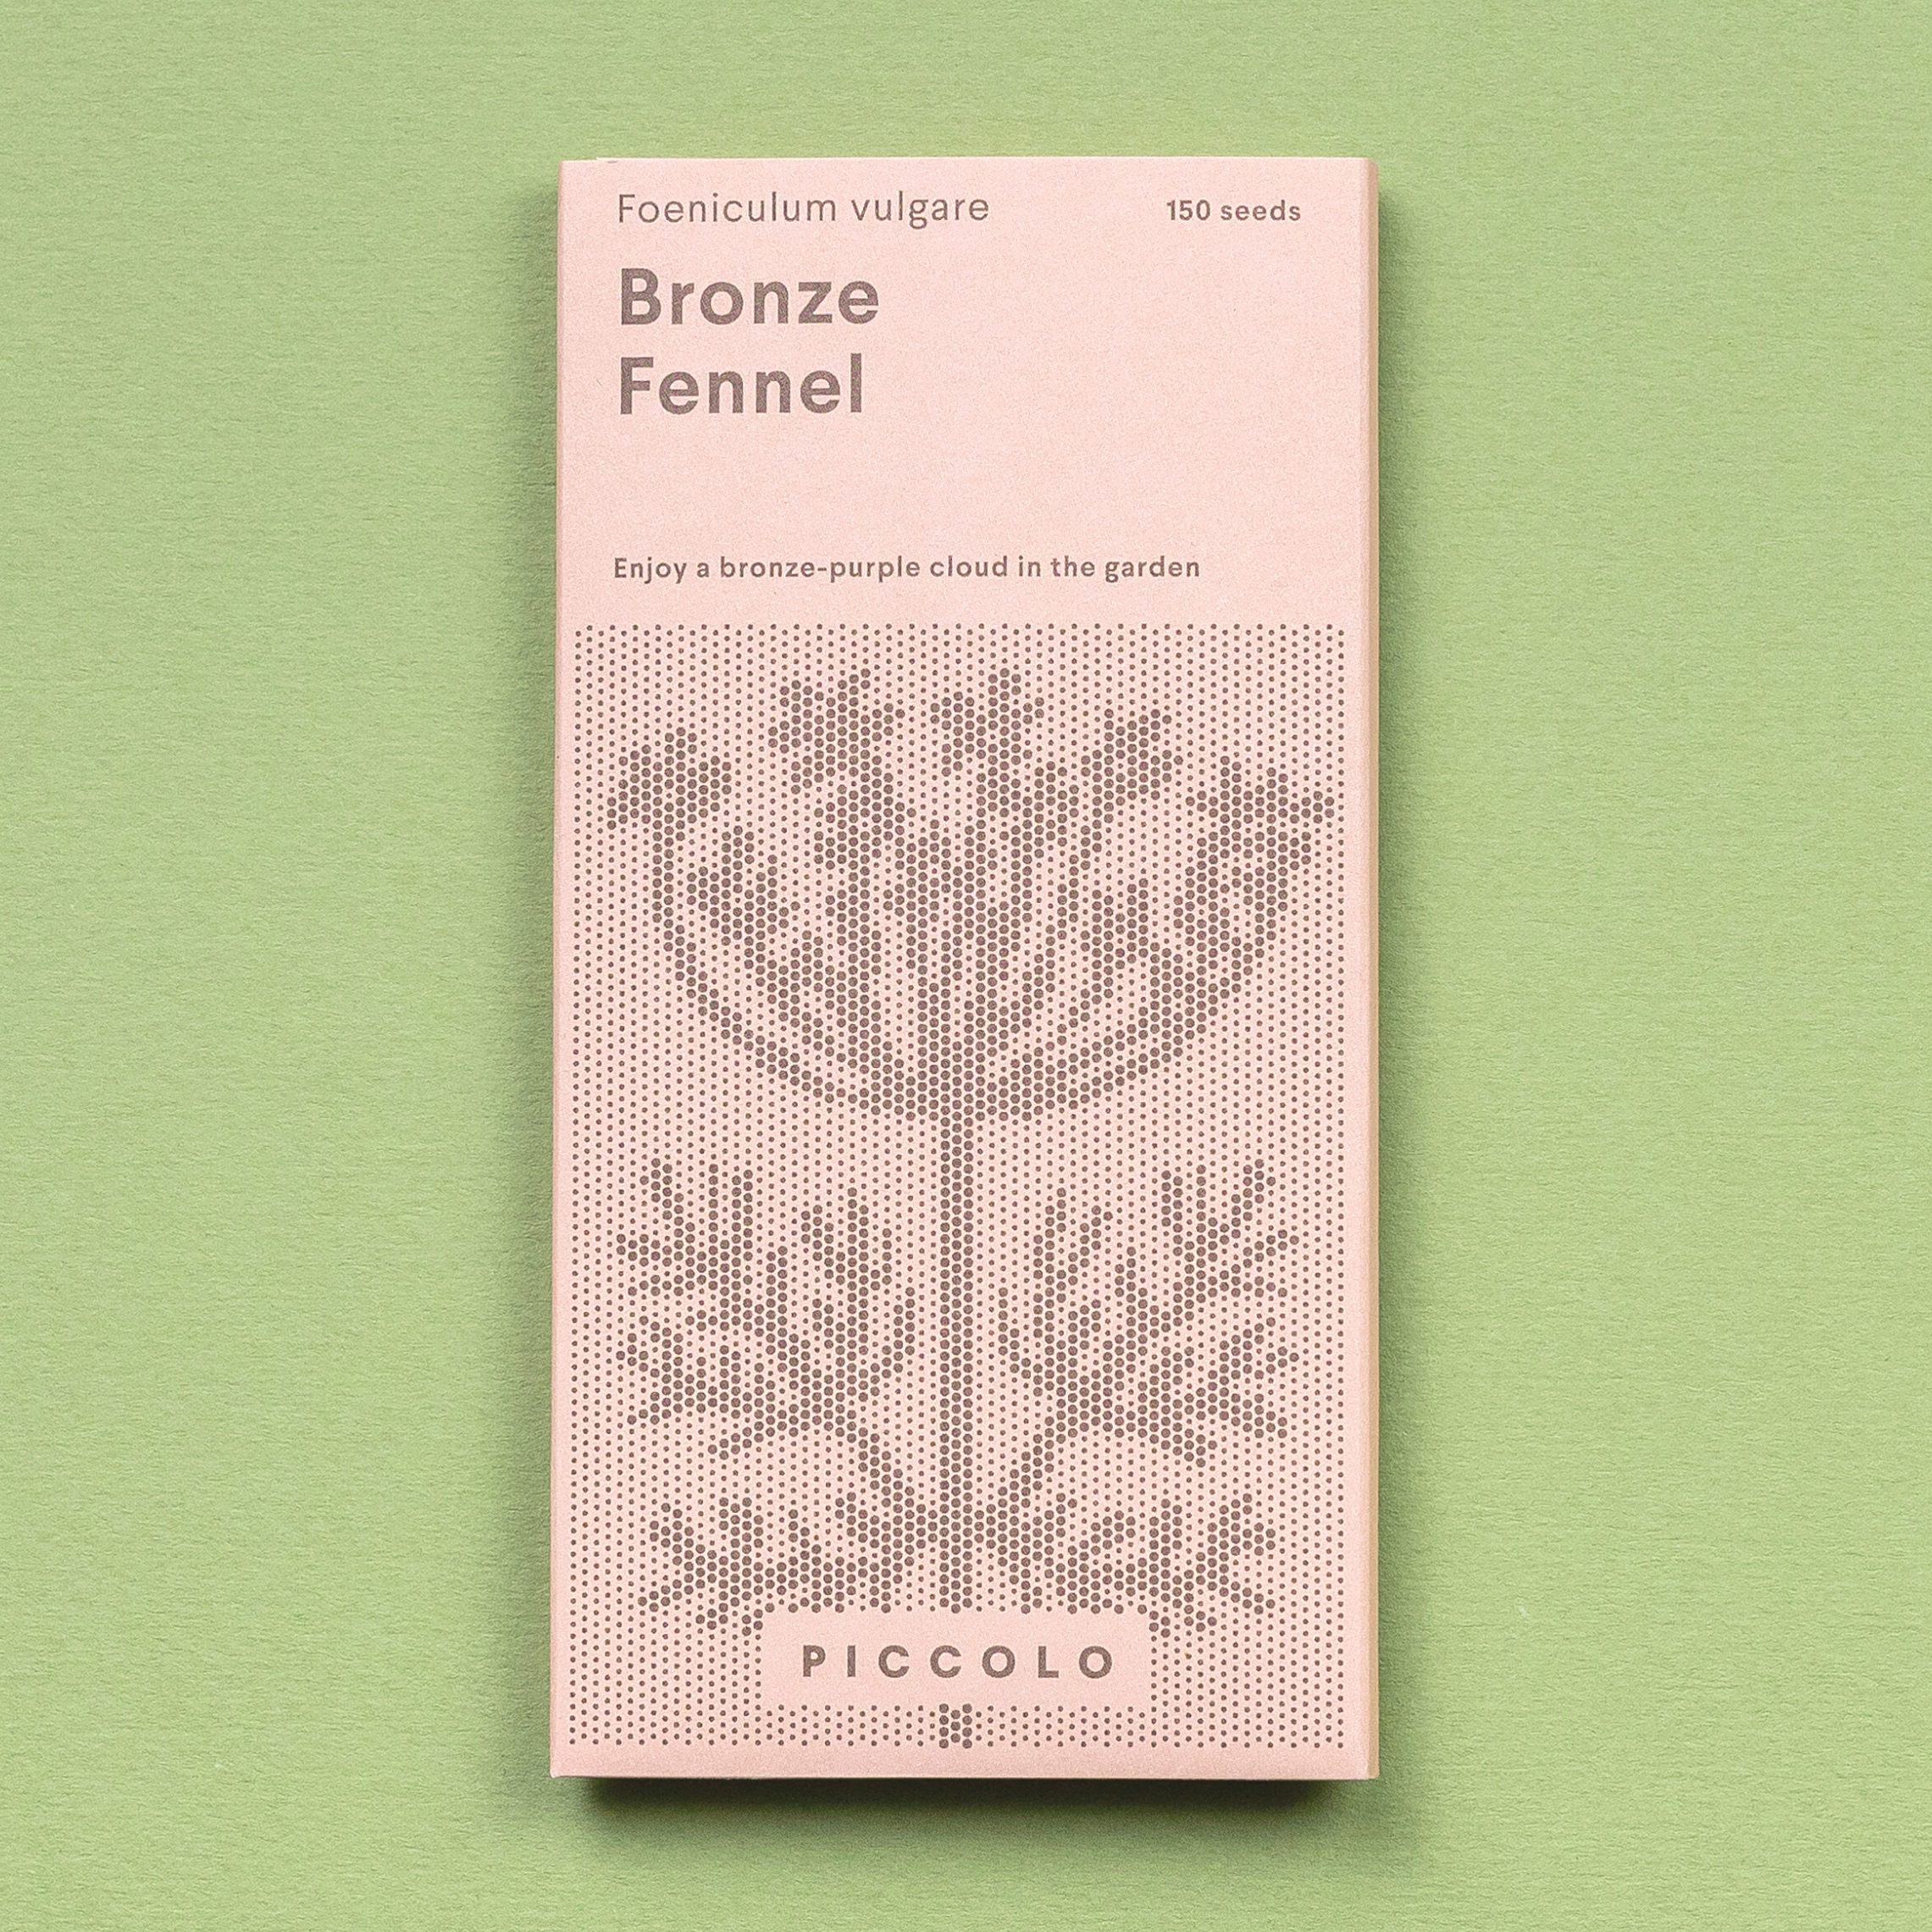 Fennel Bronze